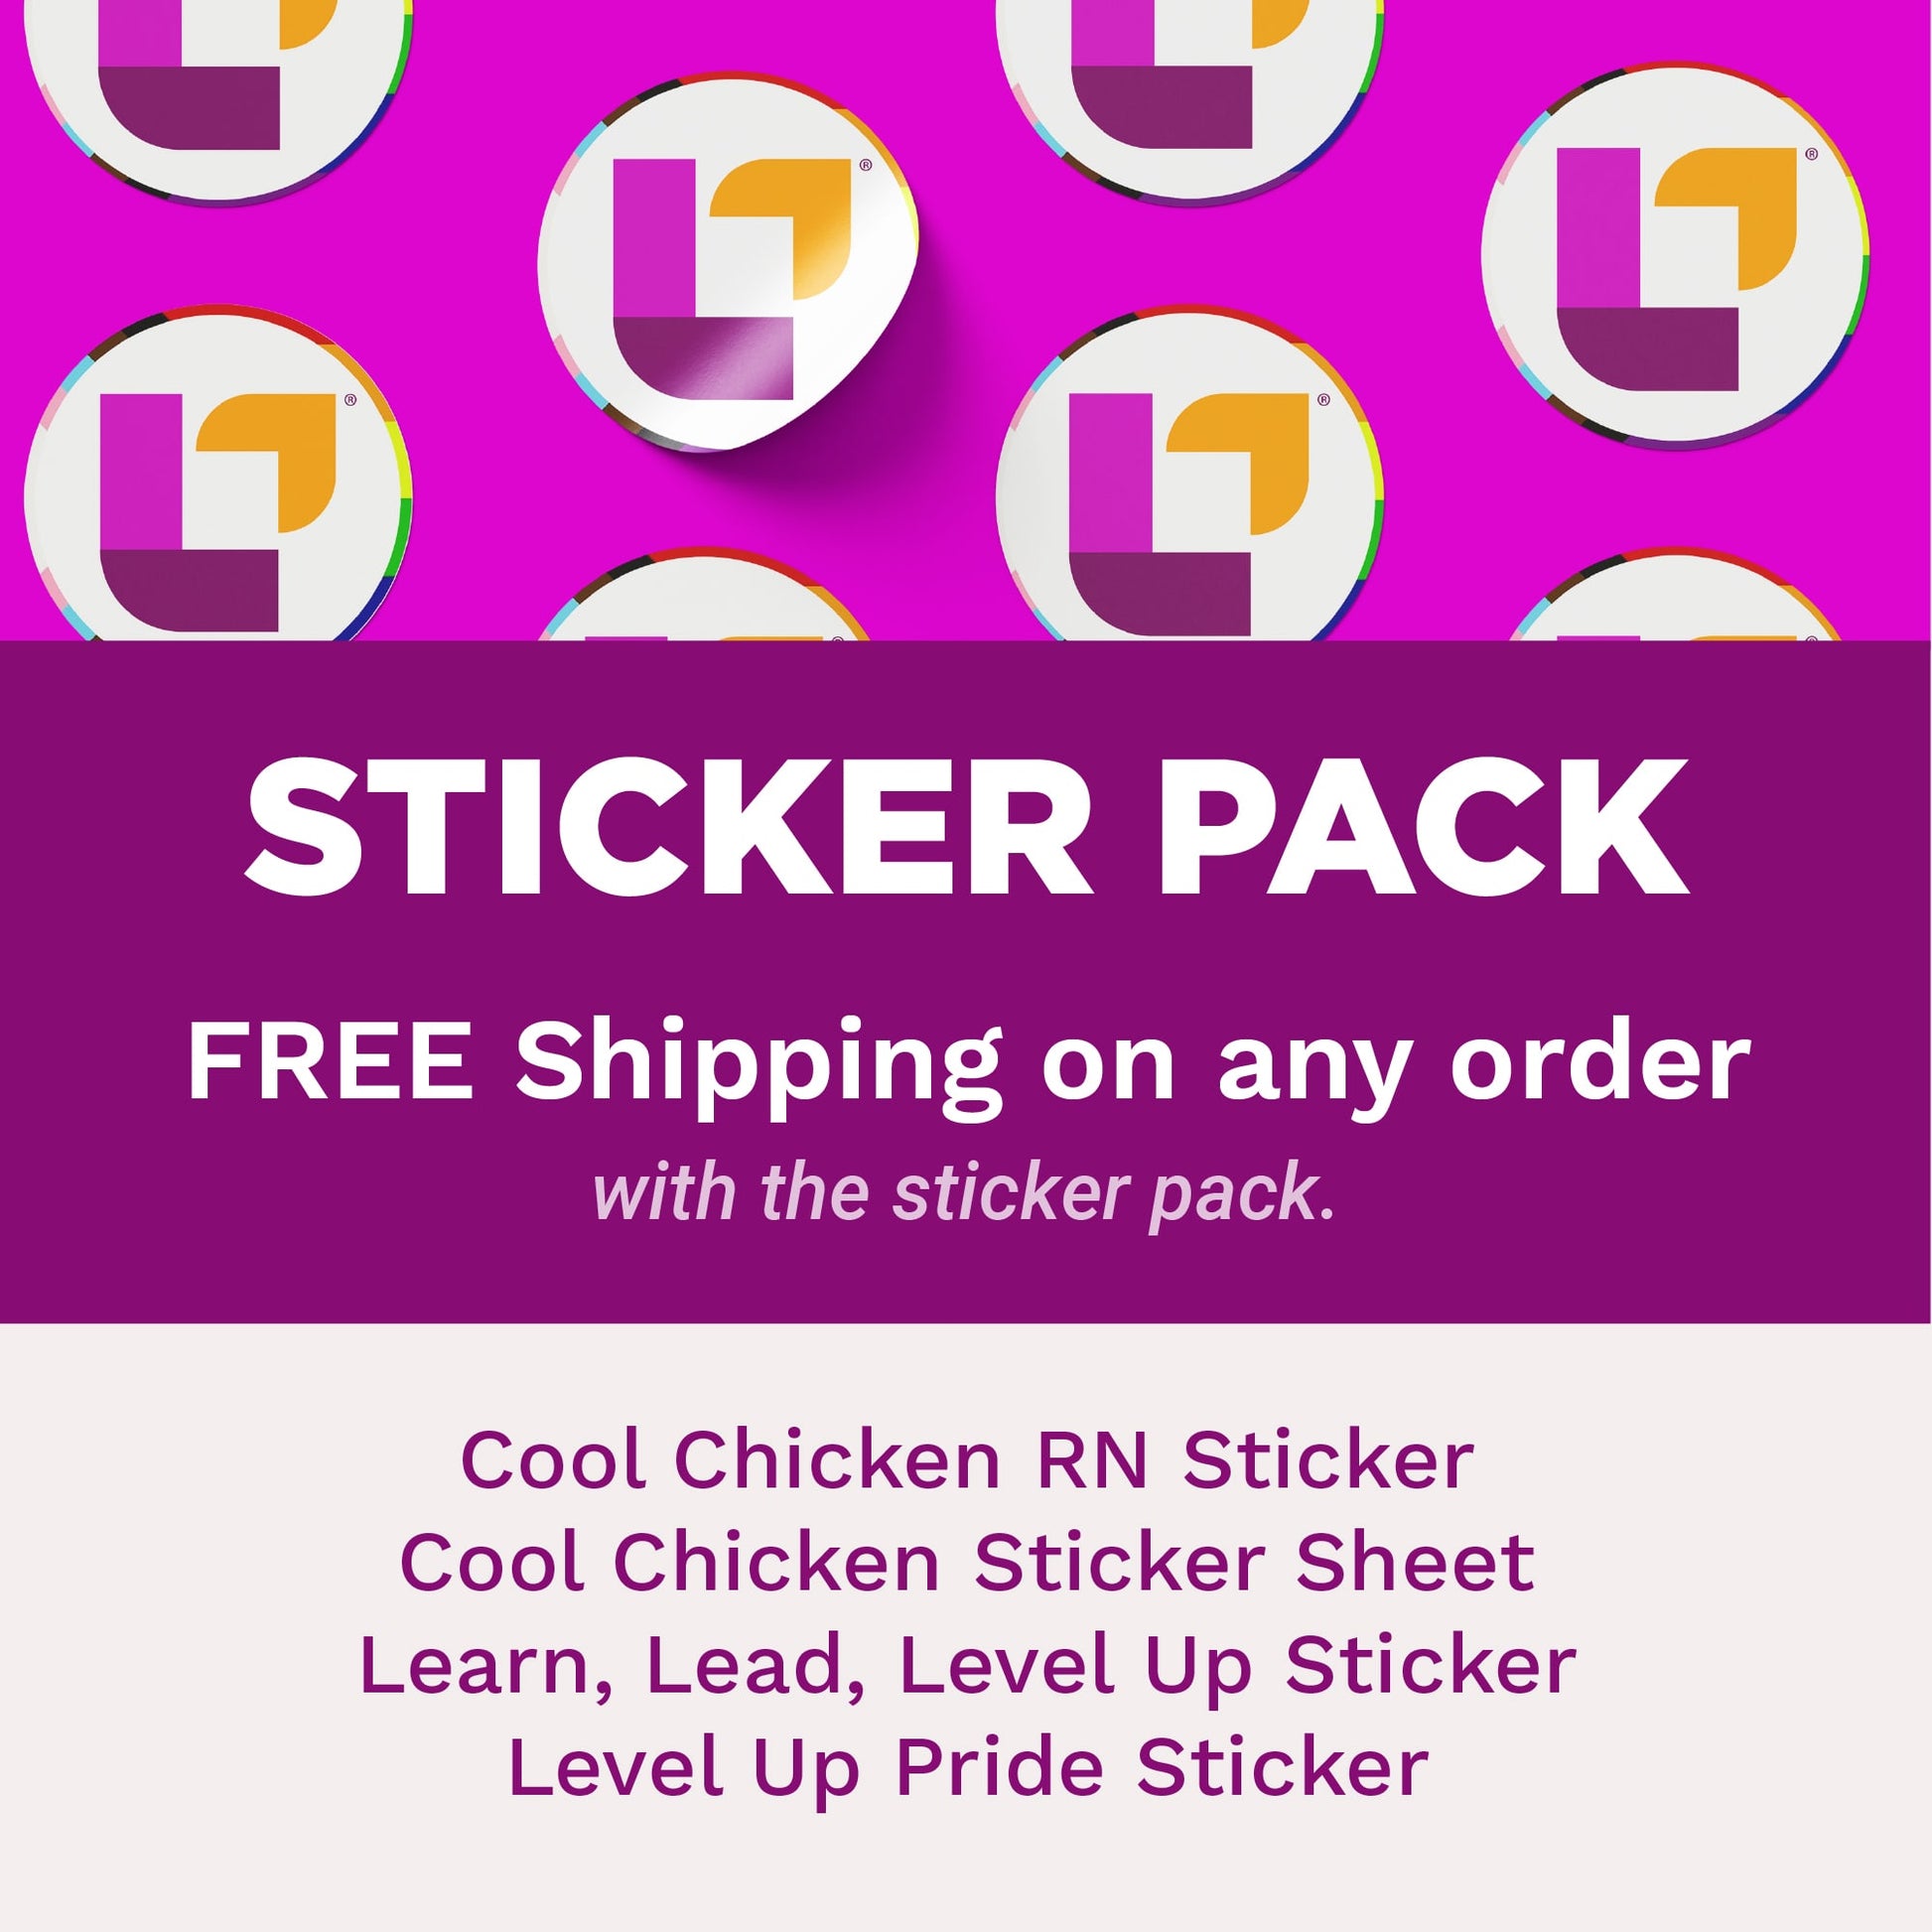 Super Sticker Pack - Stickers - LevelUpRN